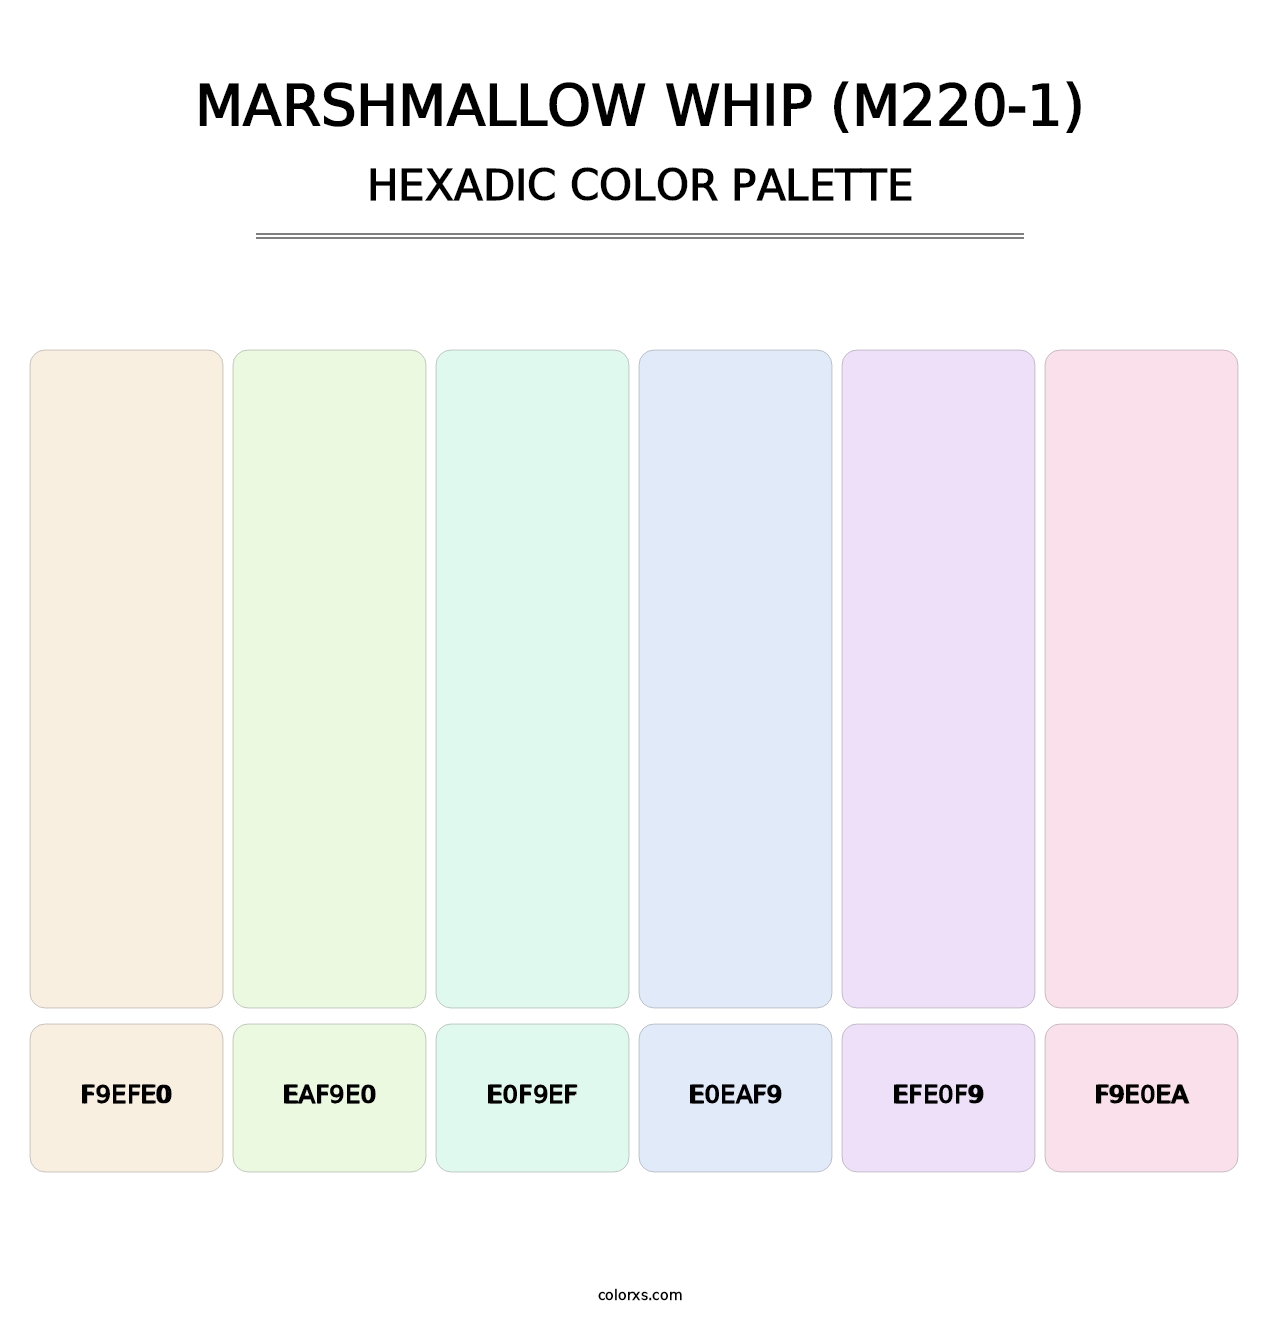 Marshmallow Whip (M220-1) - Hexadic Color Palette